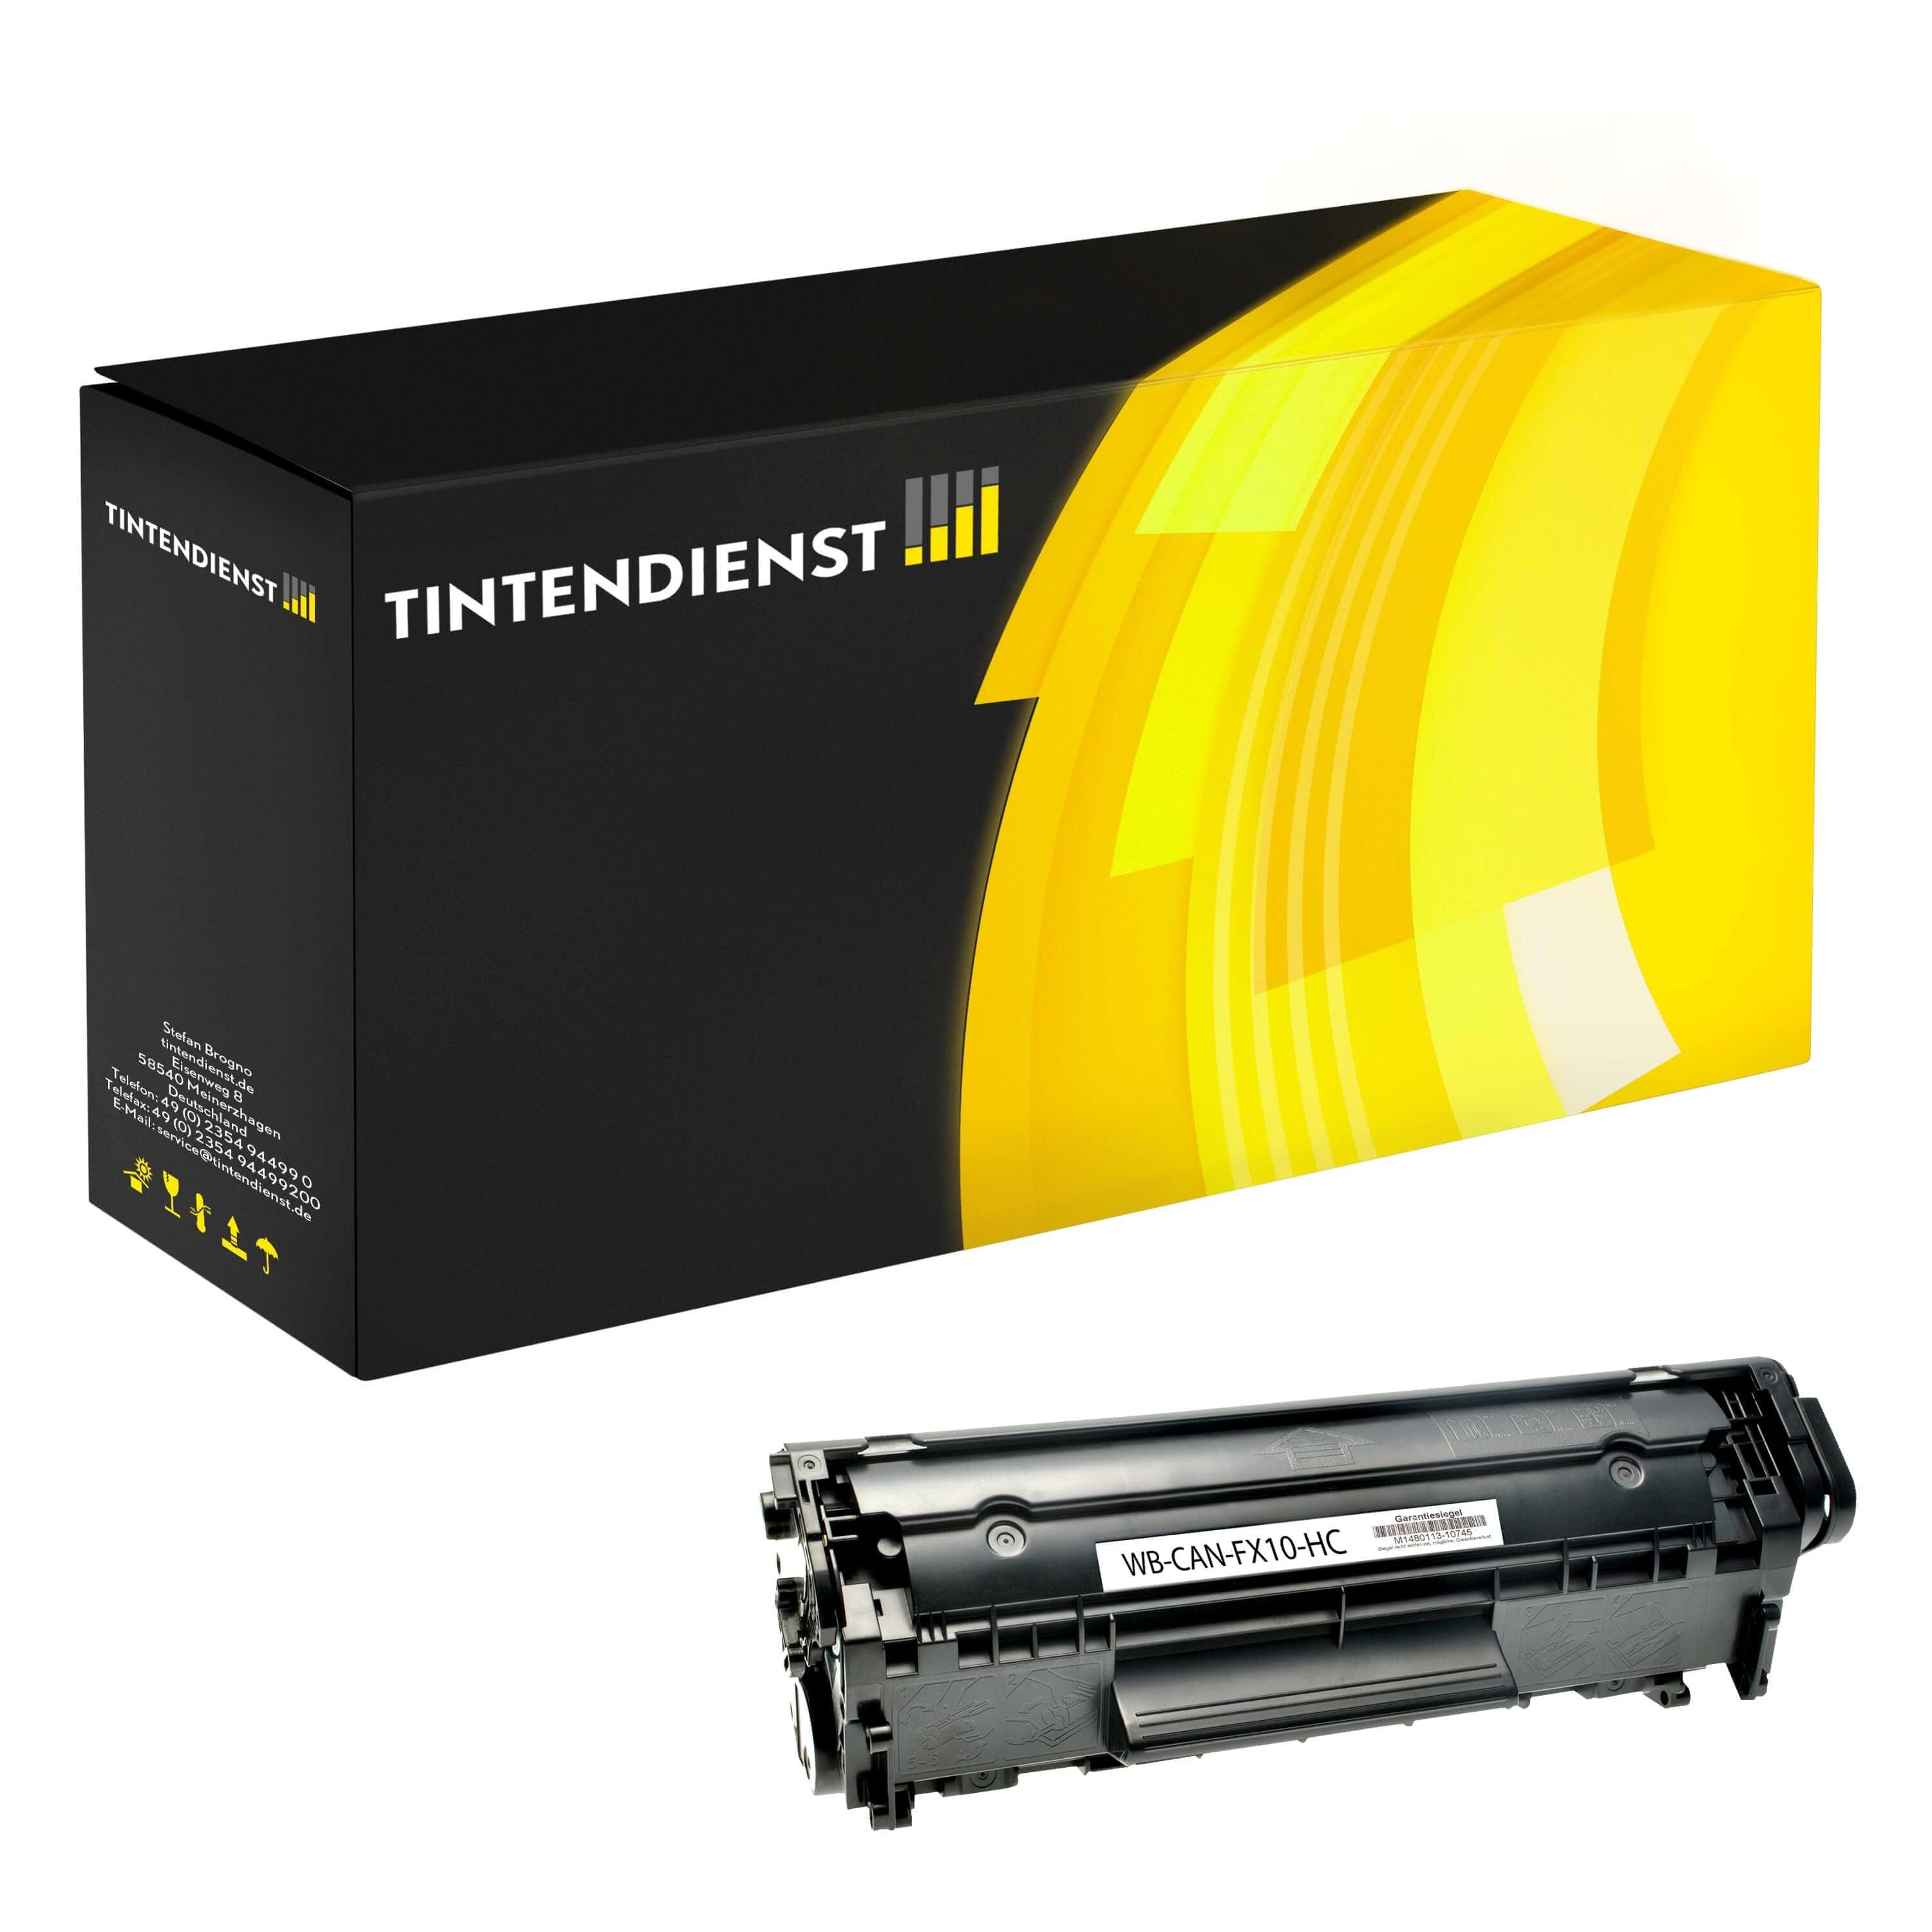 Toner kompatibel für Canon i-SENSYS Fax L 160 (0263B002 / FX-10) Schwarz